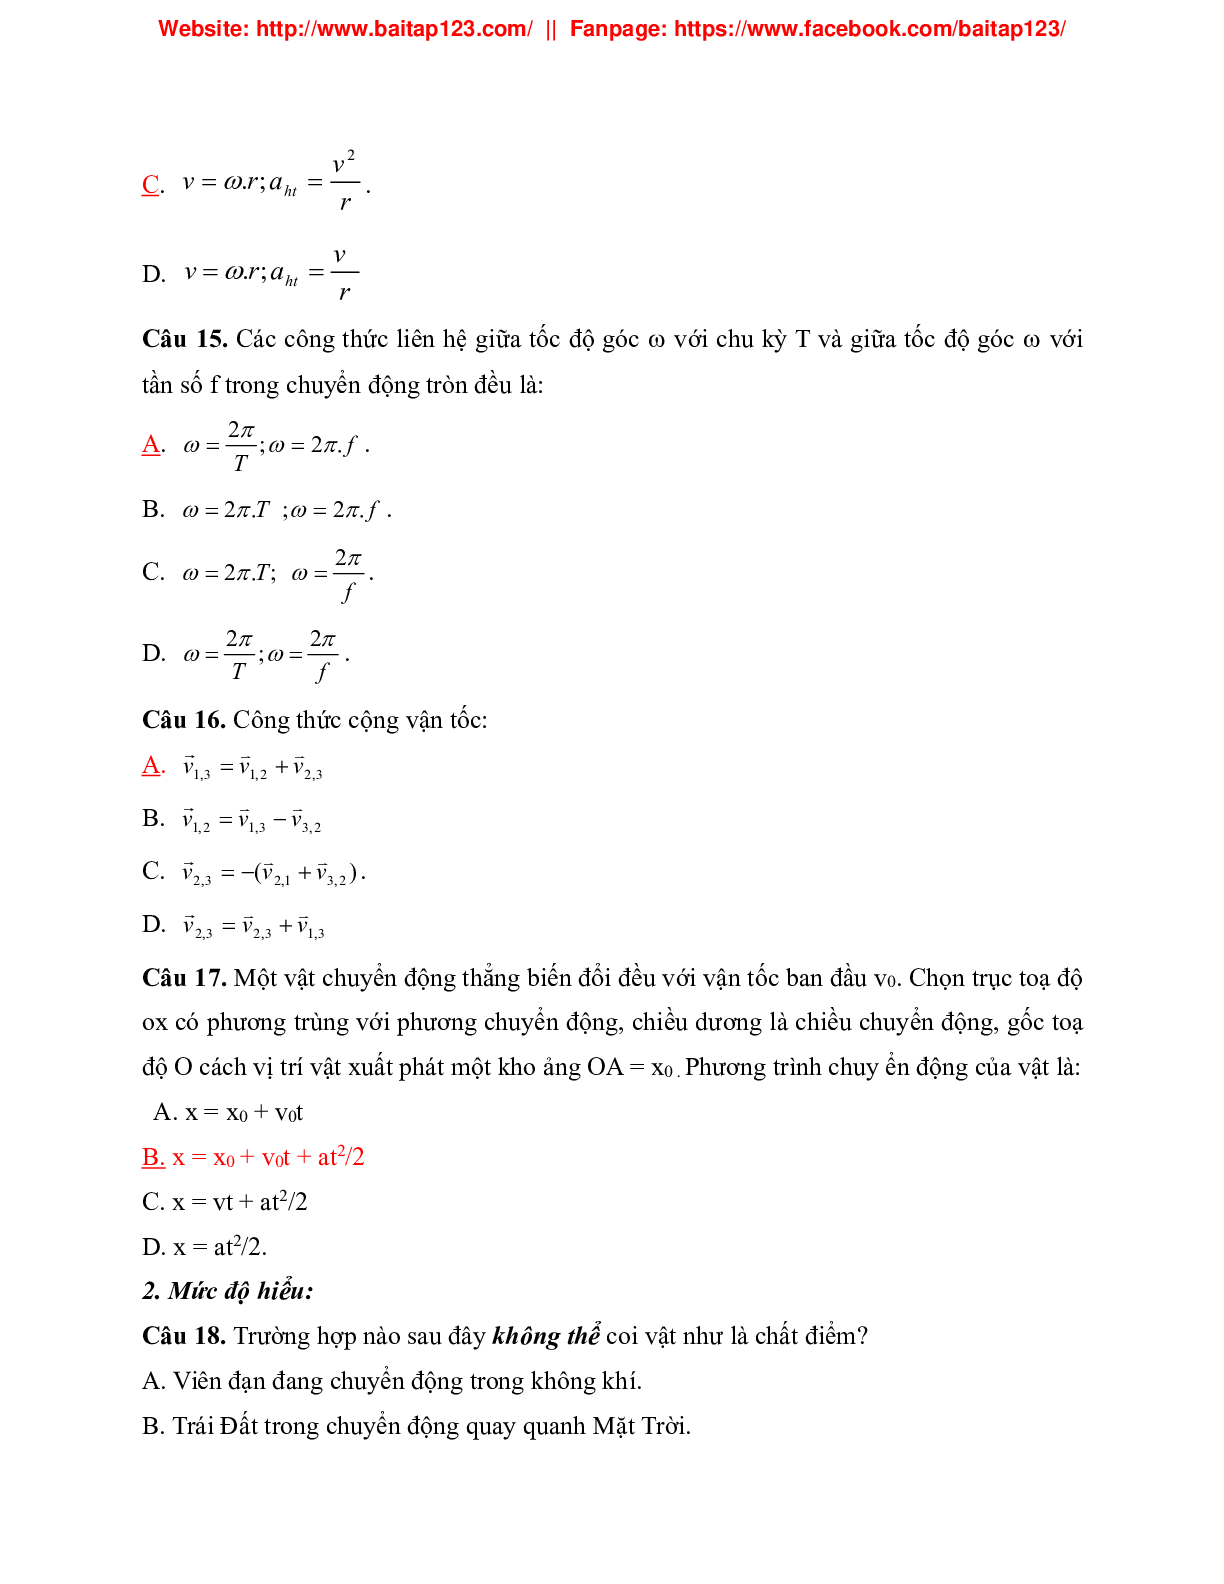 50 bài tập trắc nghiệm Động học chất điểm môn Vật lý lớp 10 (trang 4)